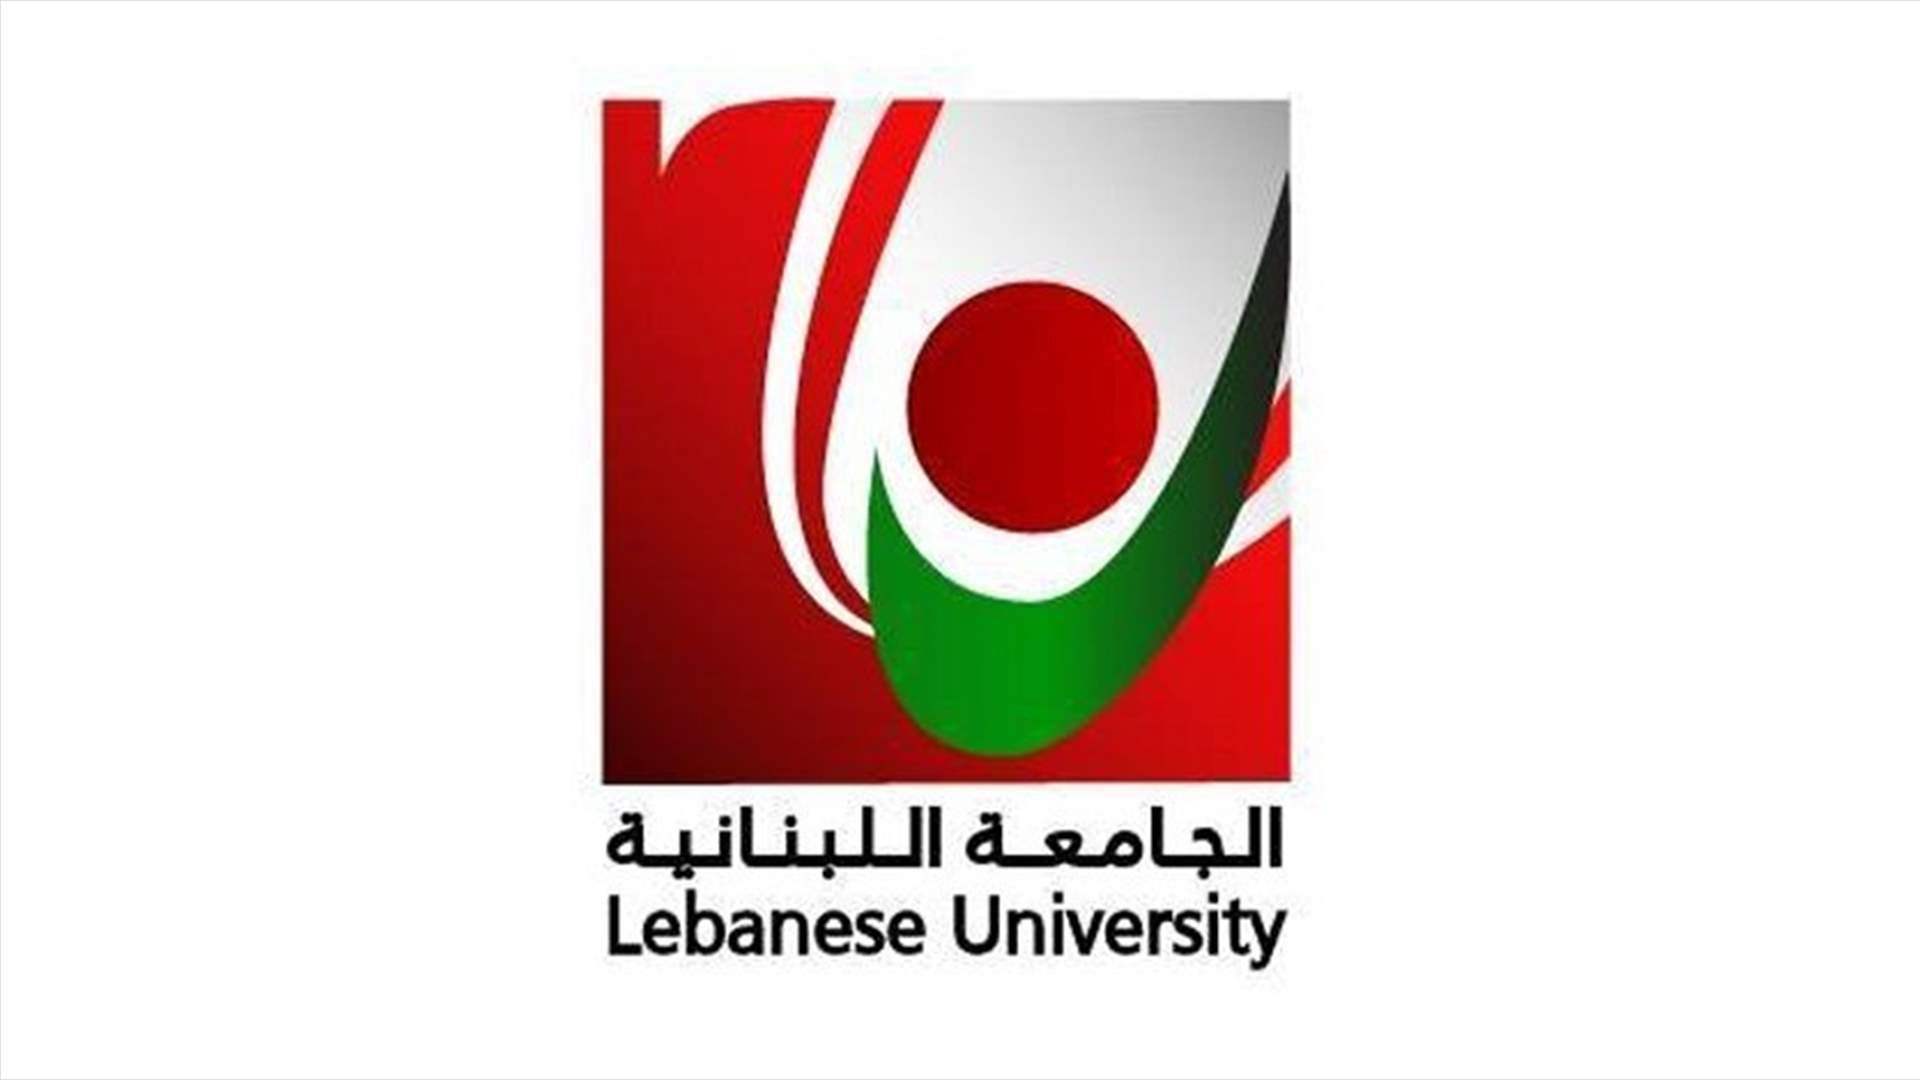 بيان للأساتذة المتعاقدين بالساعة في الجامعة اللبنانية يرفض &quot;التهديد&quot; ويصر على حقوقهم